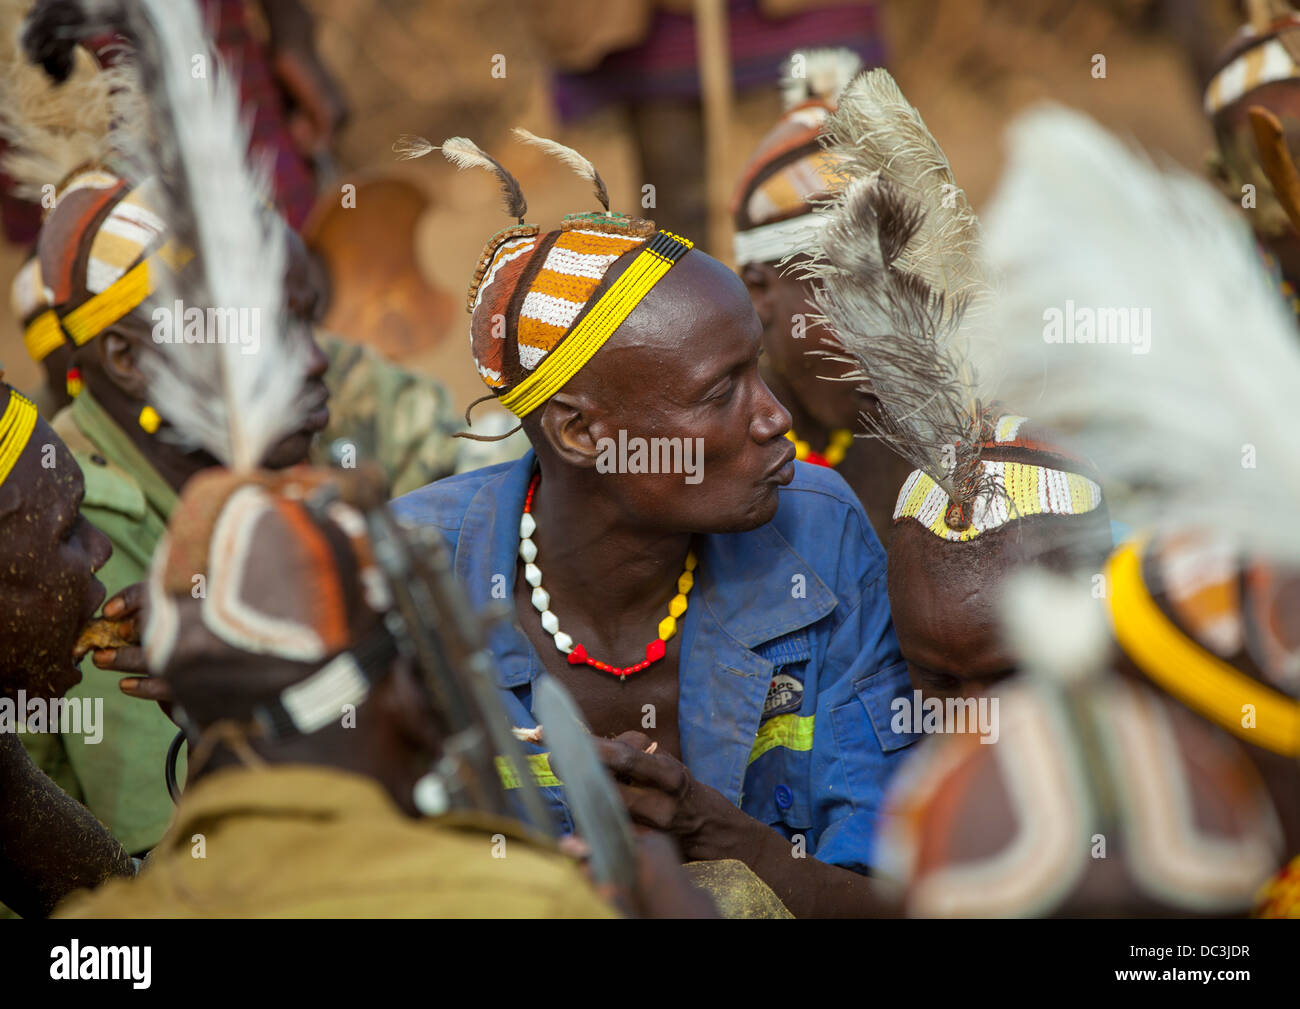 Dassanech Stamm Krieger Kuh Fleisch während einer Zeremonie, Omorate, Omo-Tal, Äthiopien Stockfoto